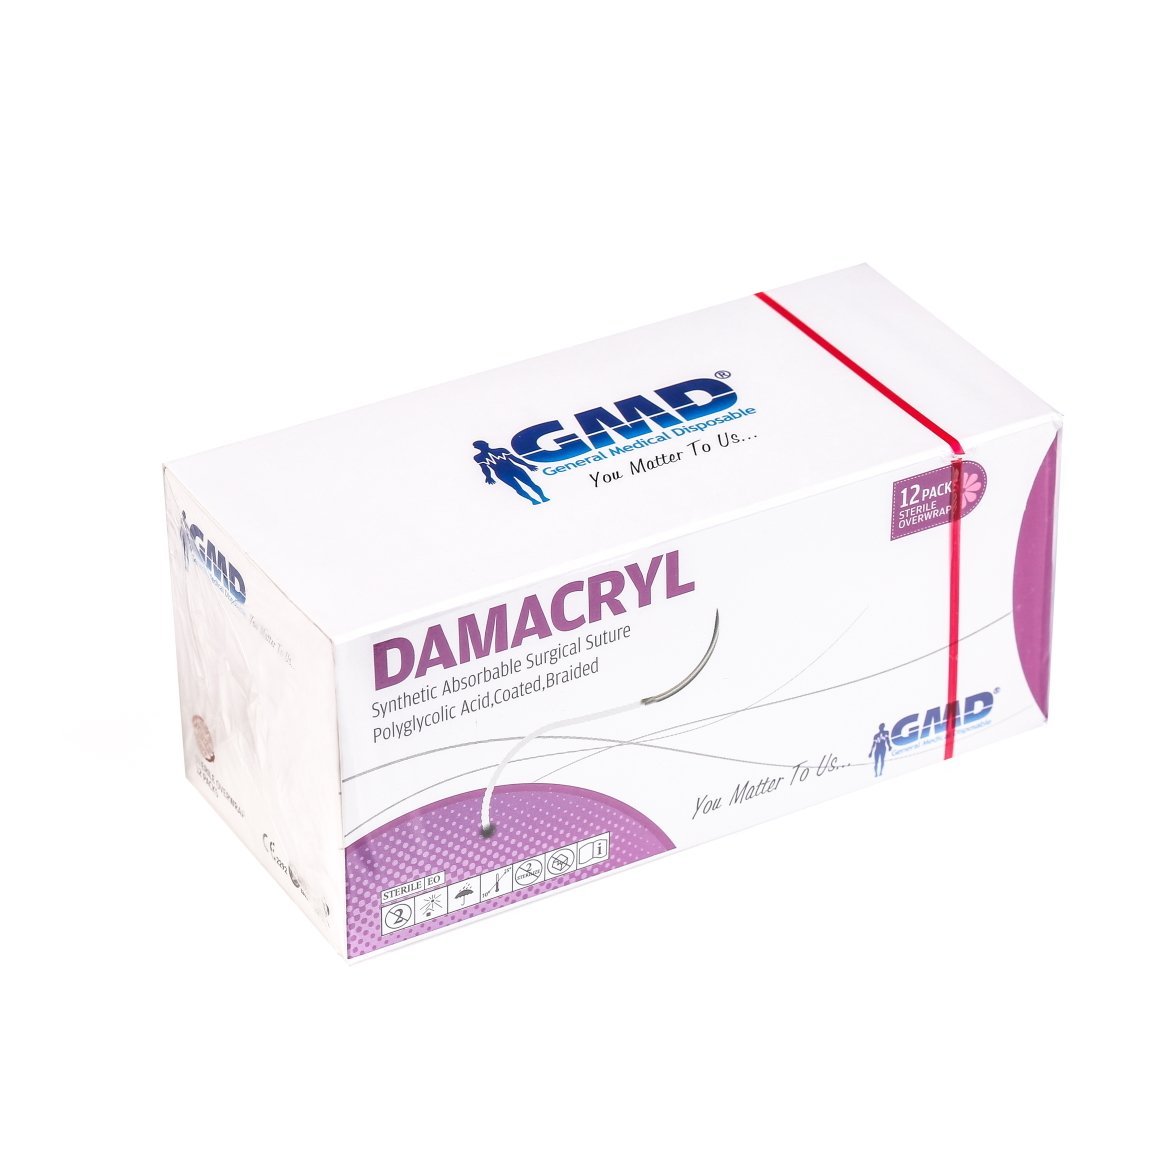 Damacryl Emilebilir Cerrahi Sütür - PGA İplik - USP:2-0-75cm - 3/8 Daire 26 mm - Ters Keskin İğne